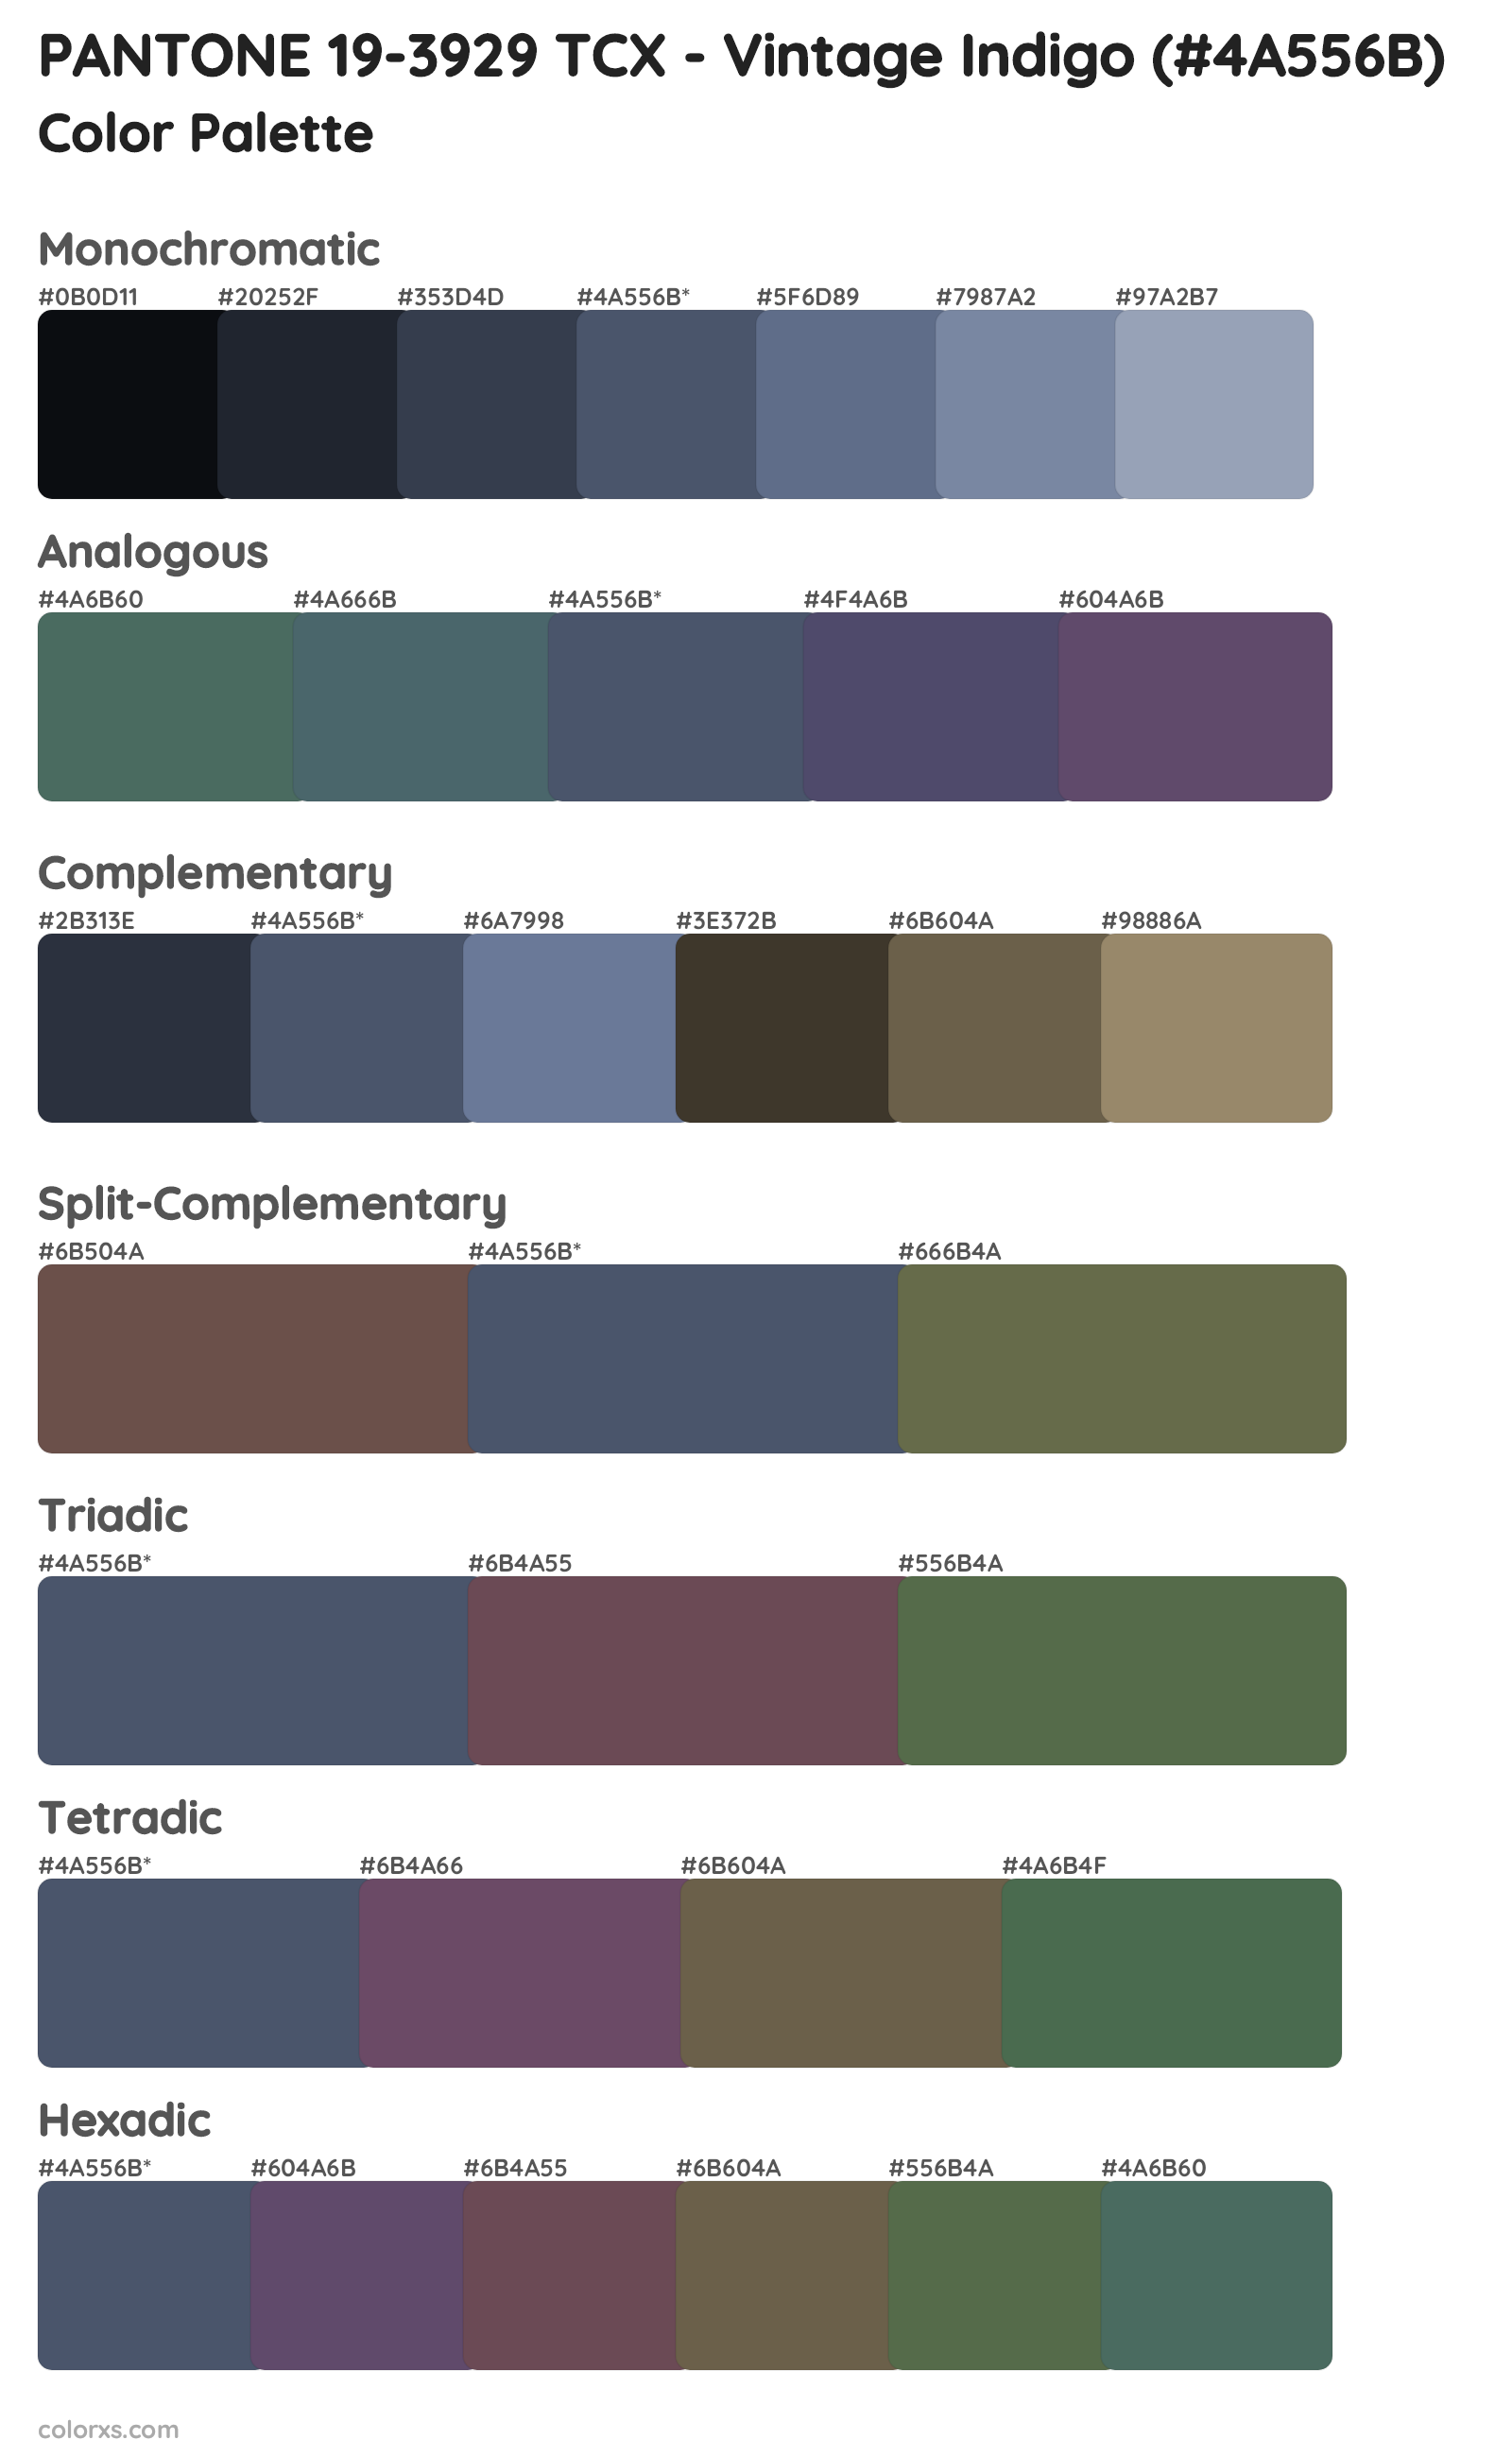 PANTONE 19-3929 TCX - Vintage Indigo Color Scheme Palettes